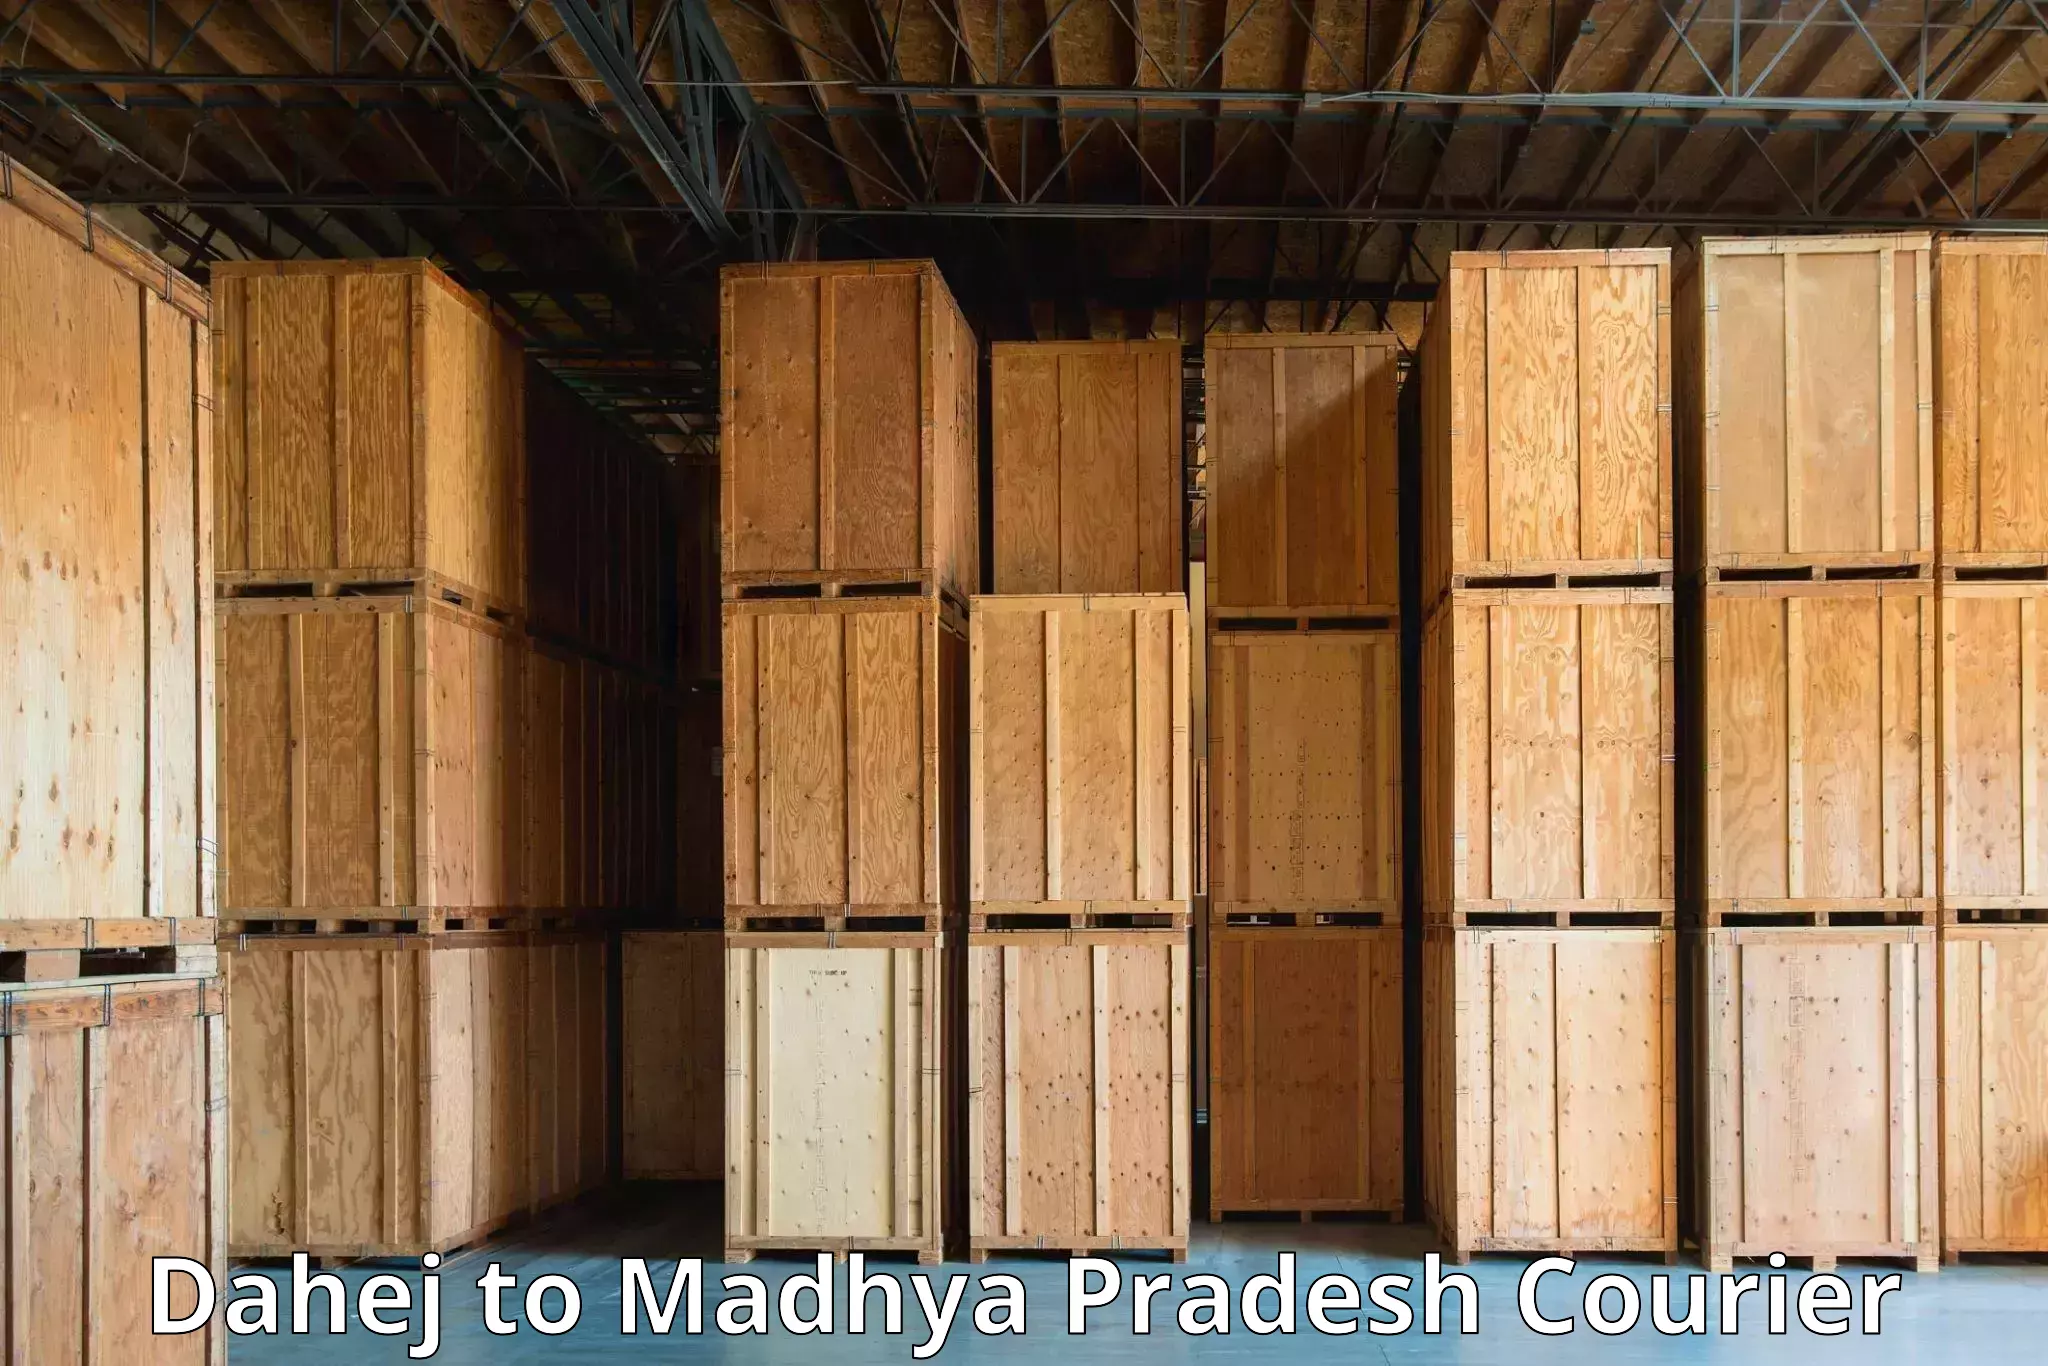 Digital courier platforms Dahej to Madhya Pradesh